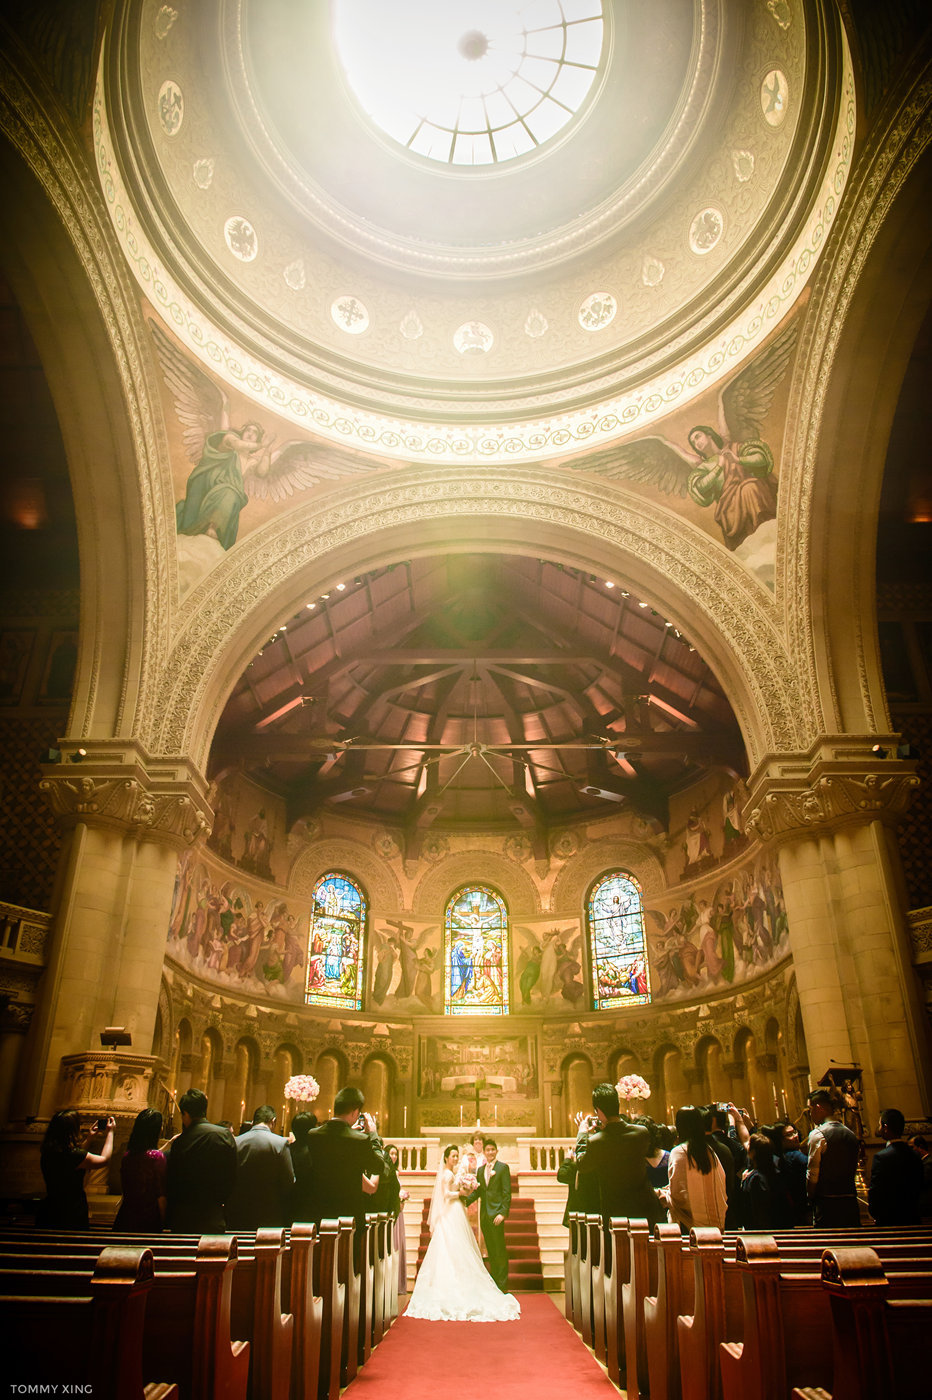 stanford memorial church wedding 旧金山湾区斯坦福教堂婚礼 Tommy Xing Photography 056.jpg